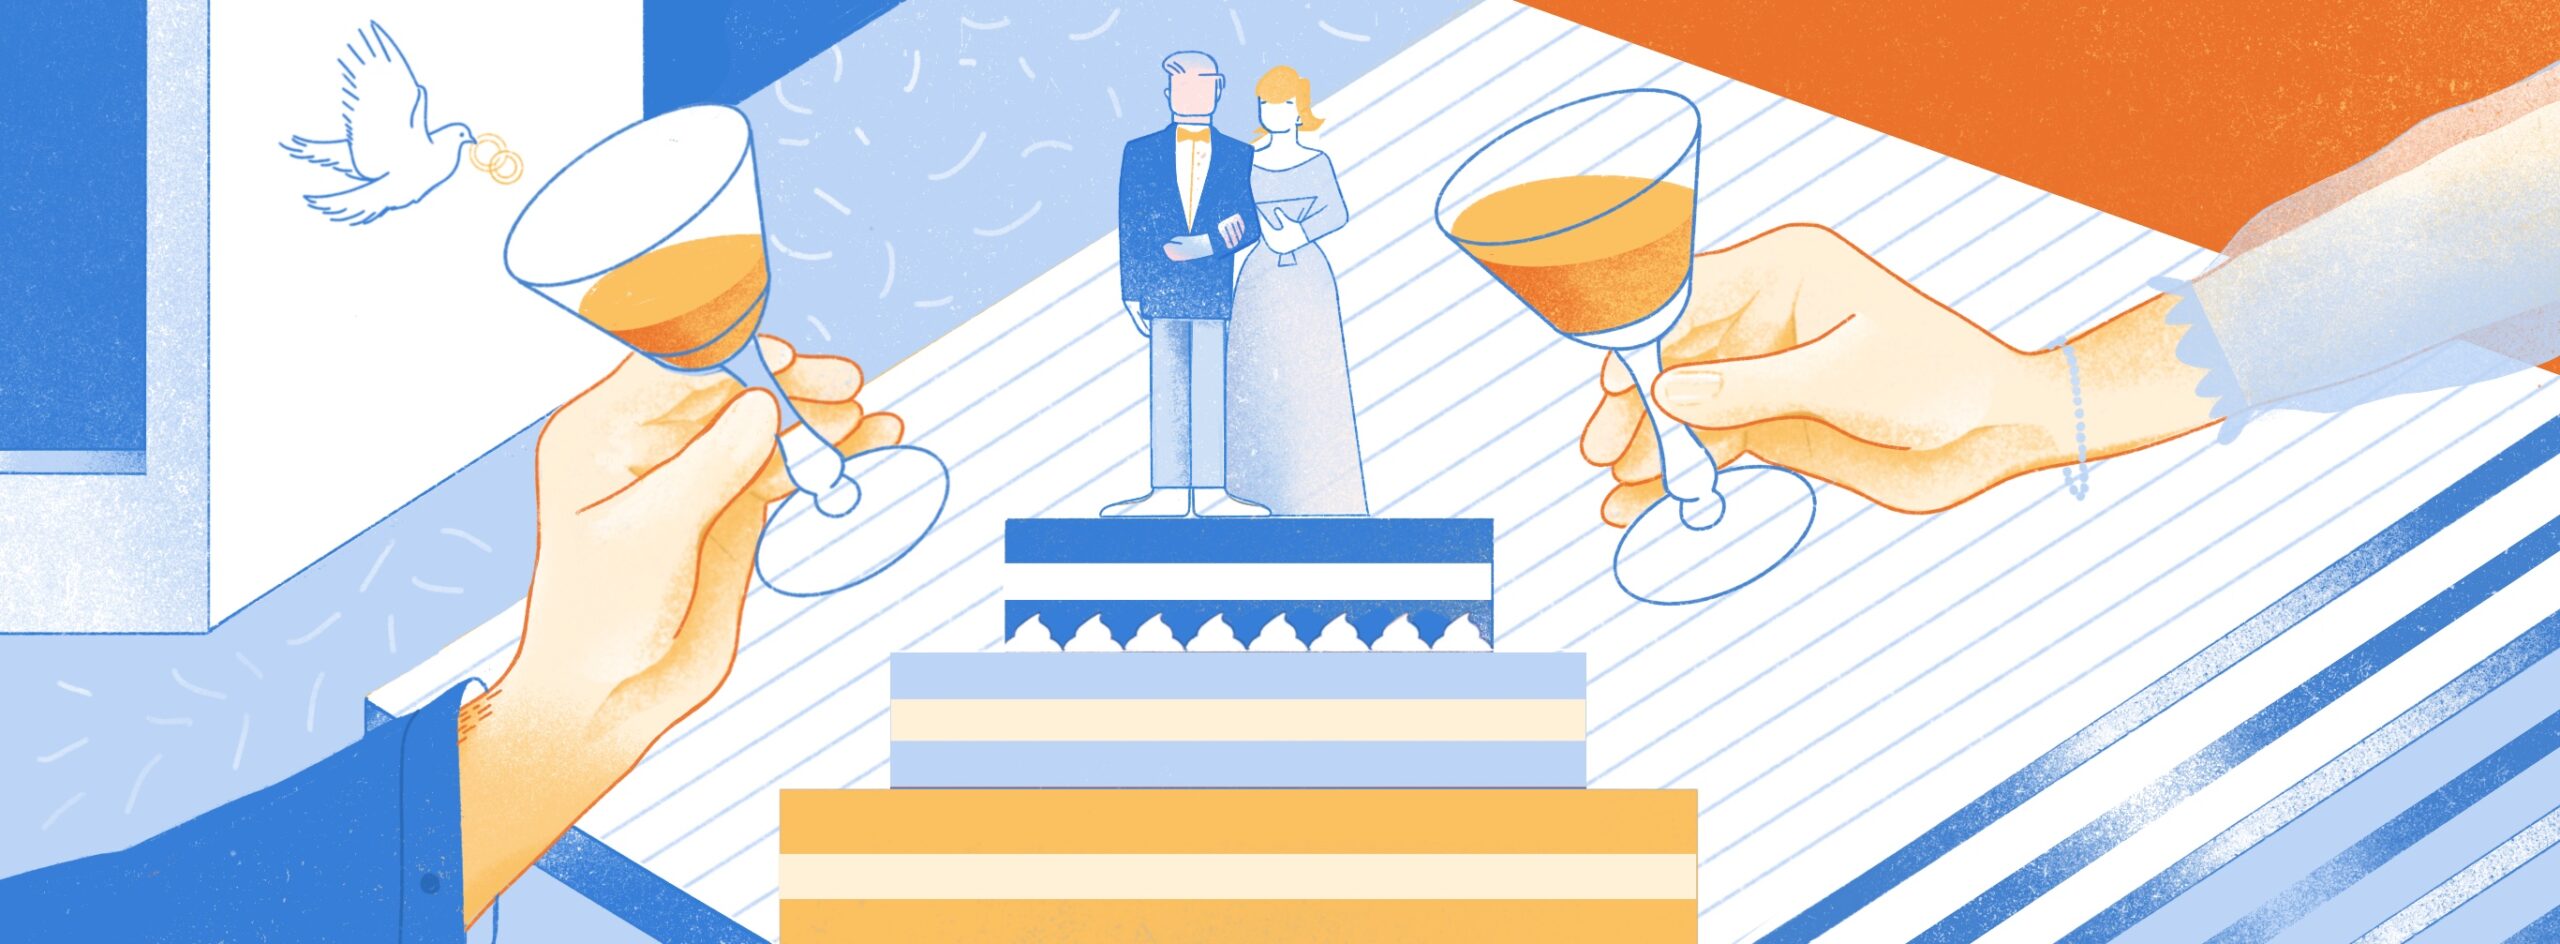 Сценарий свадьбы: с чего начать и как сделать лучше